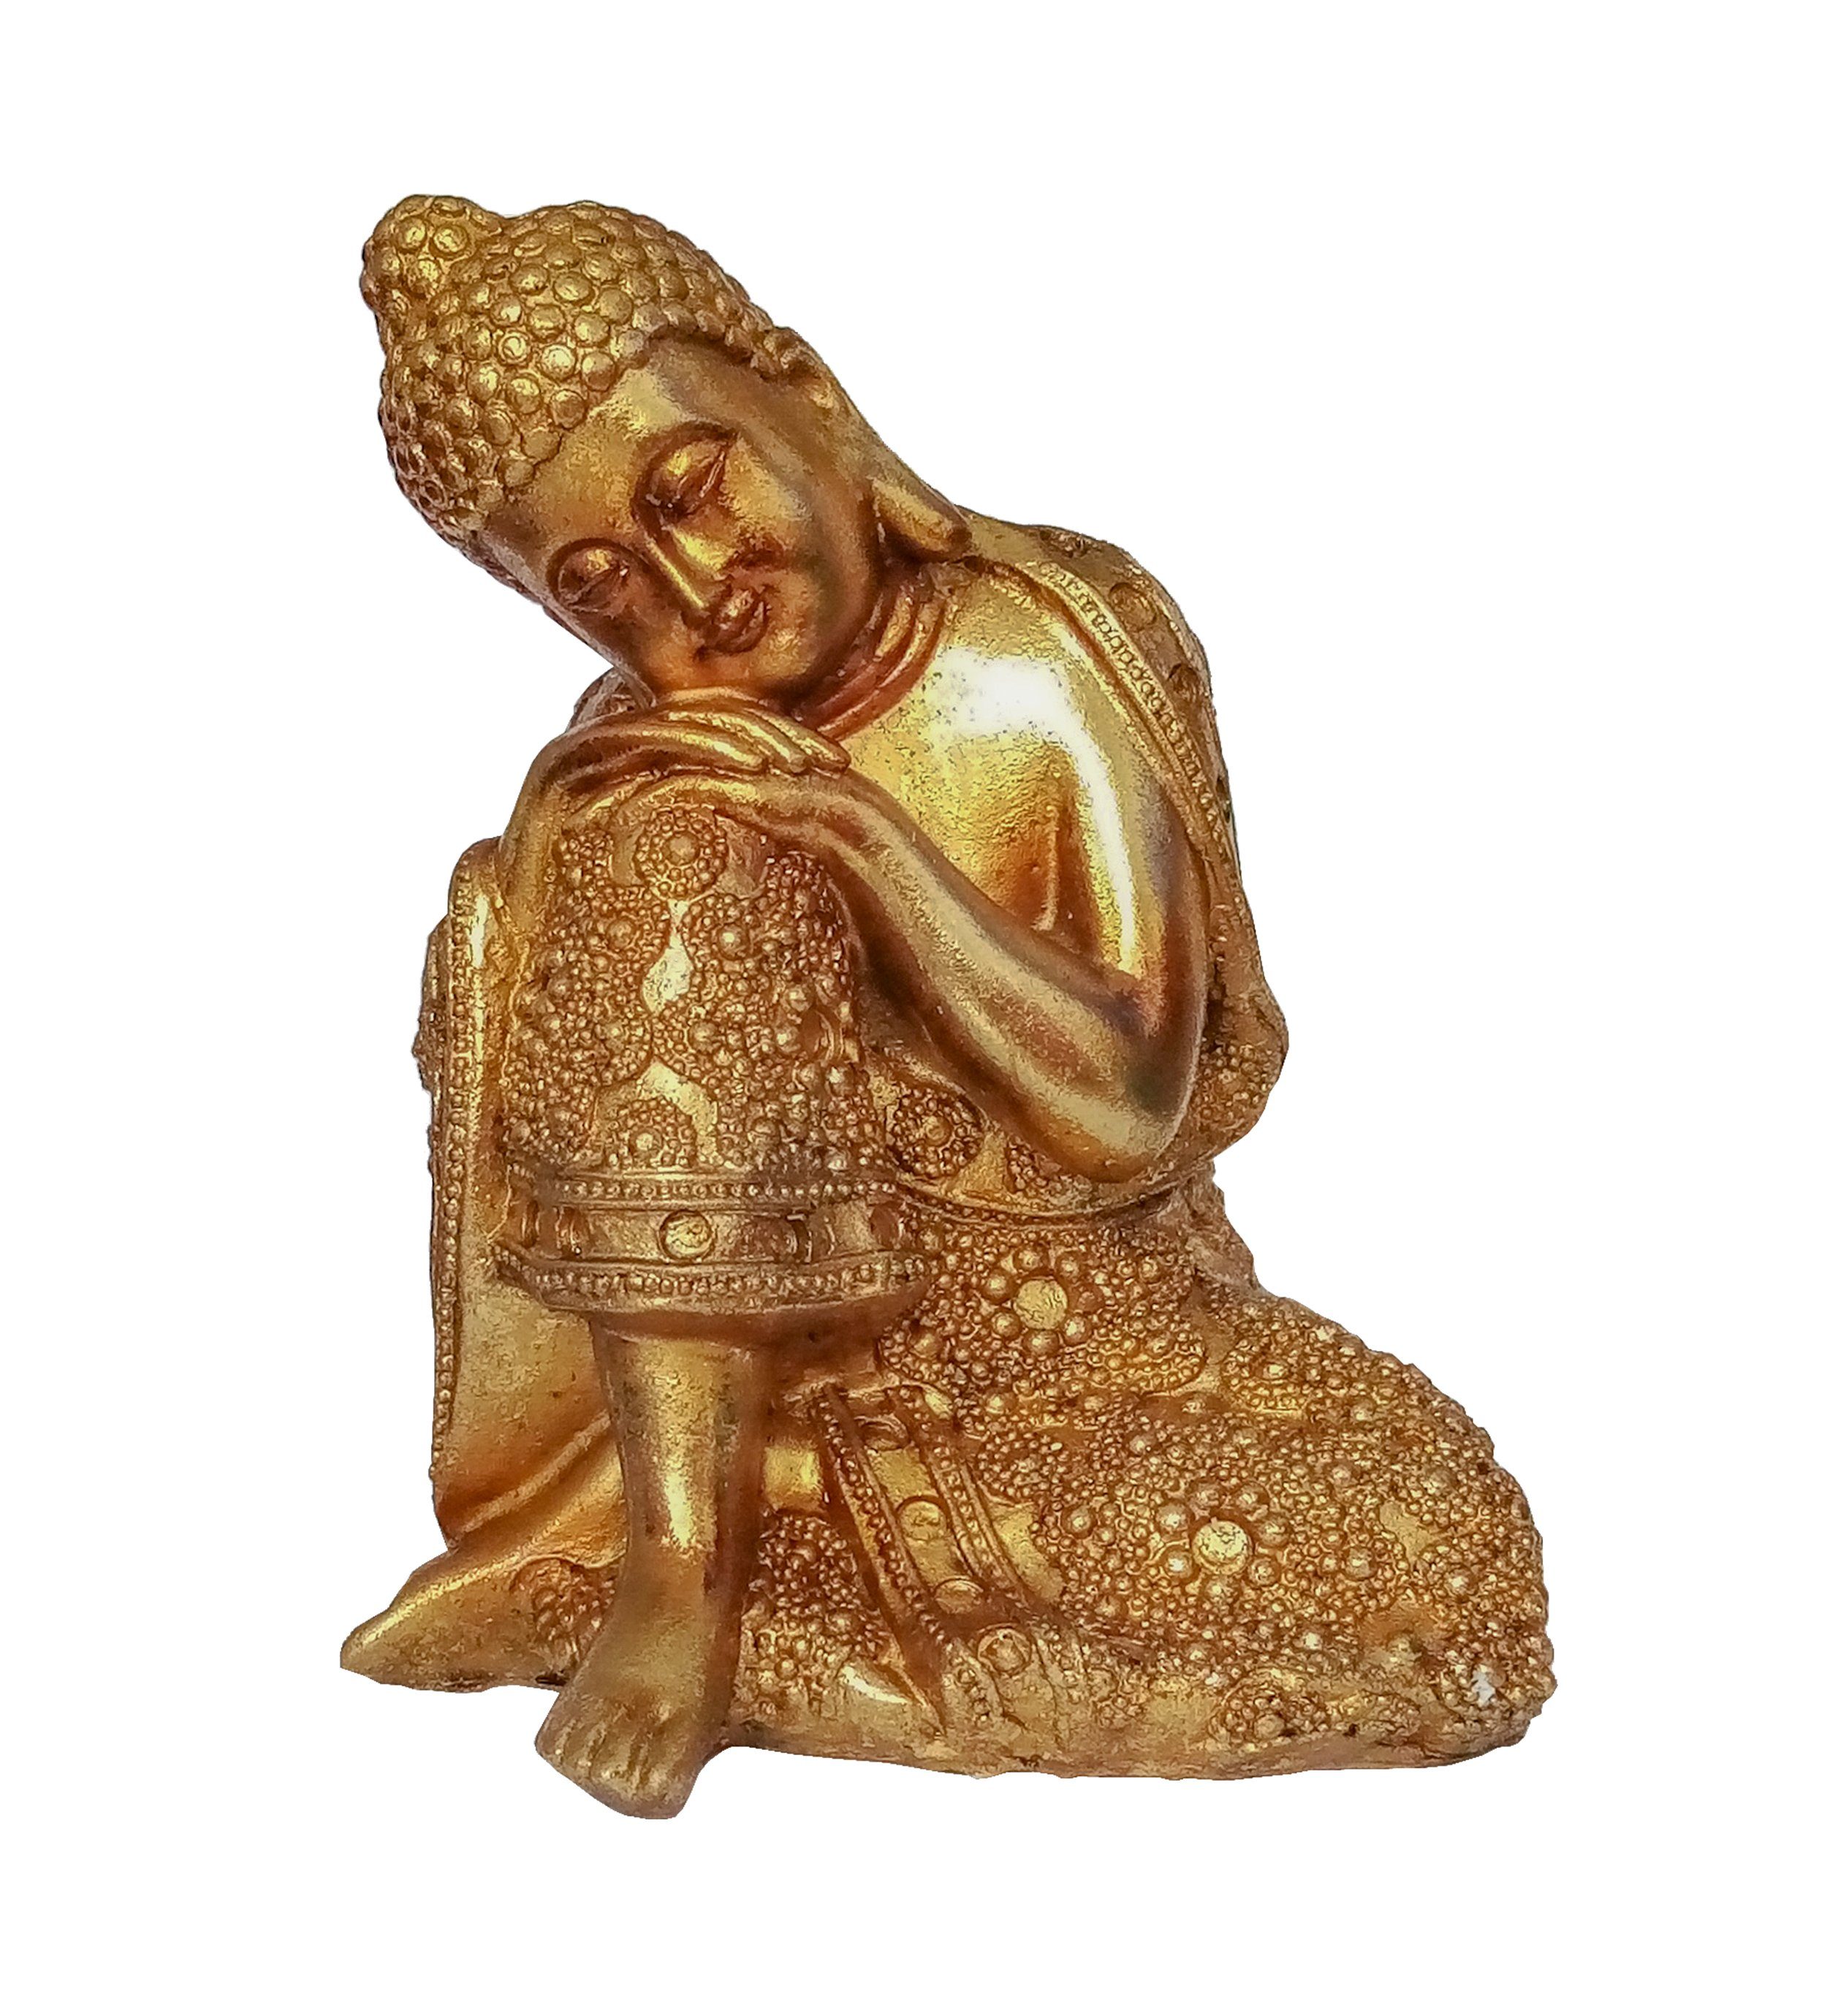 Giftdecor Buddhafigur Buddha Figur 12x16cm Gold Auf Knie aus Polyresin 91 (auf rechtes Knie), Thai Budda Garten Statue Feng Shui Deko Decoration